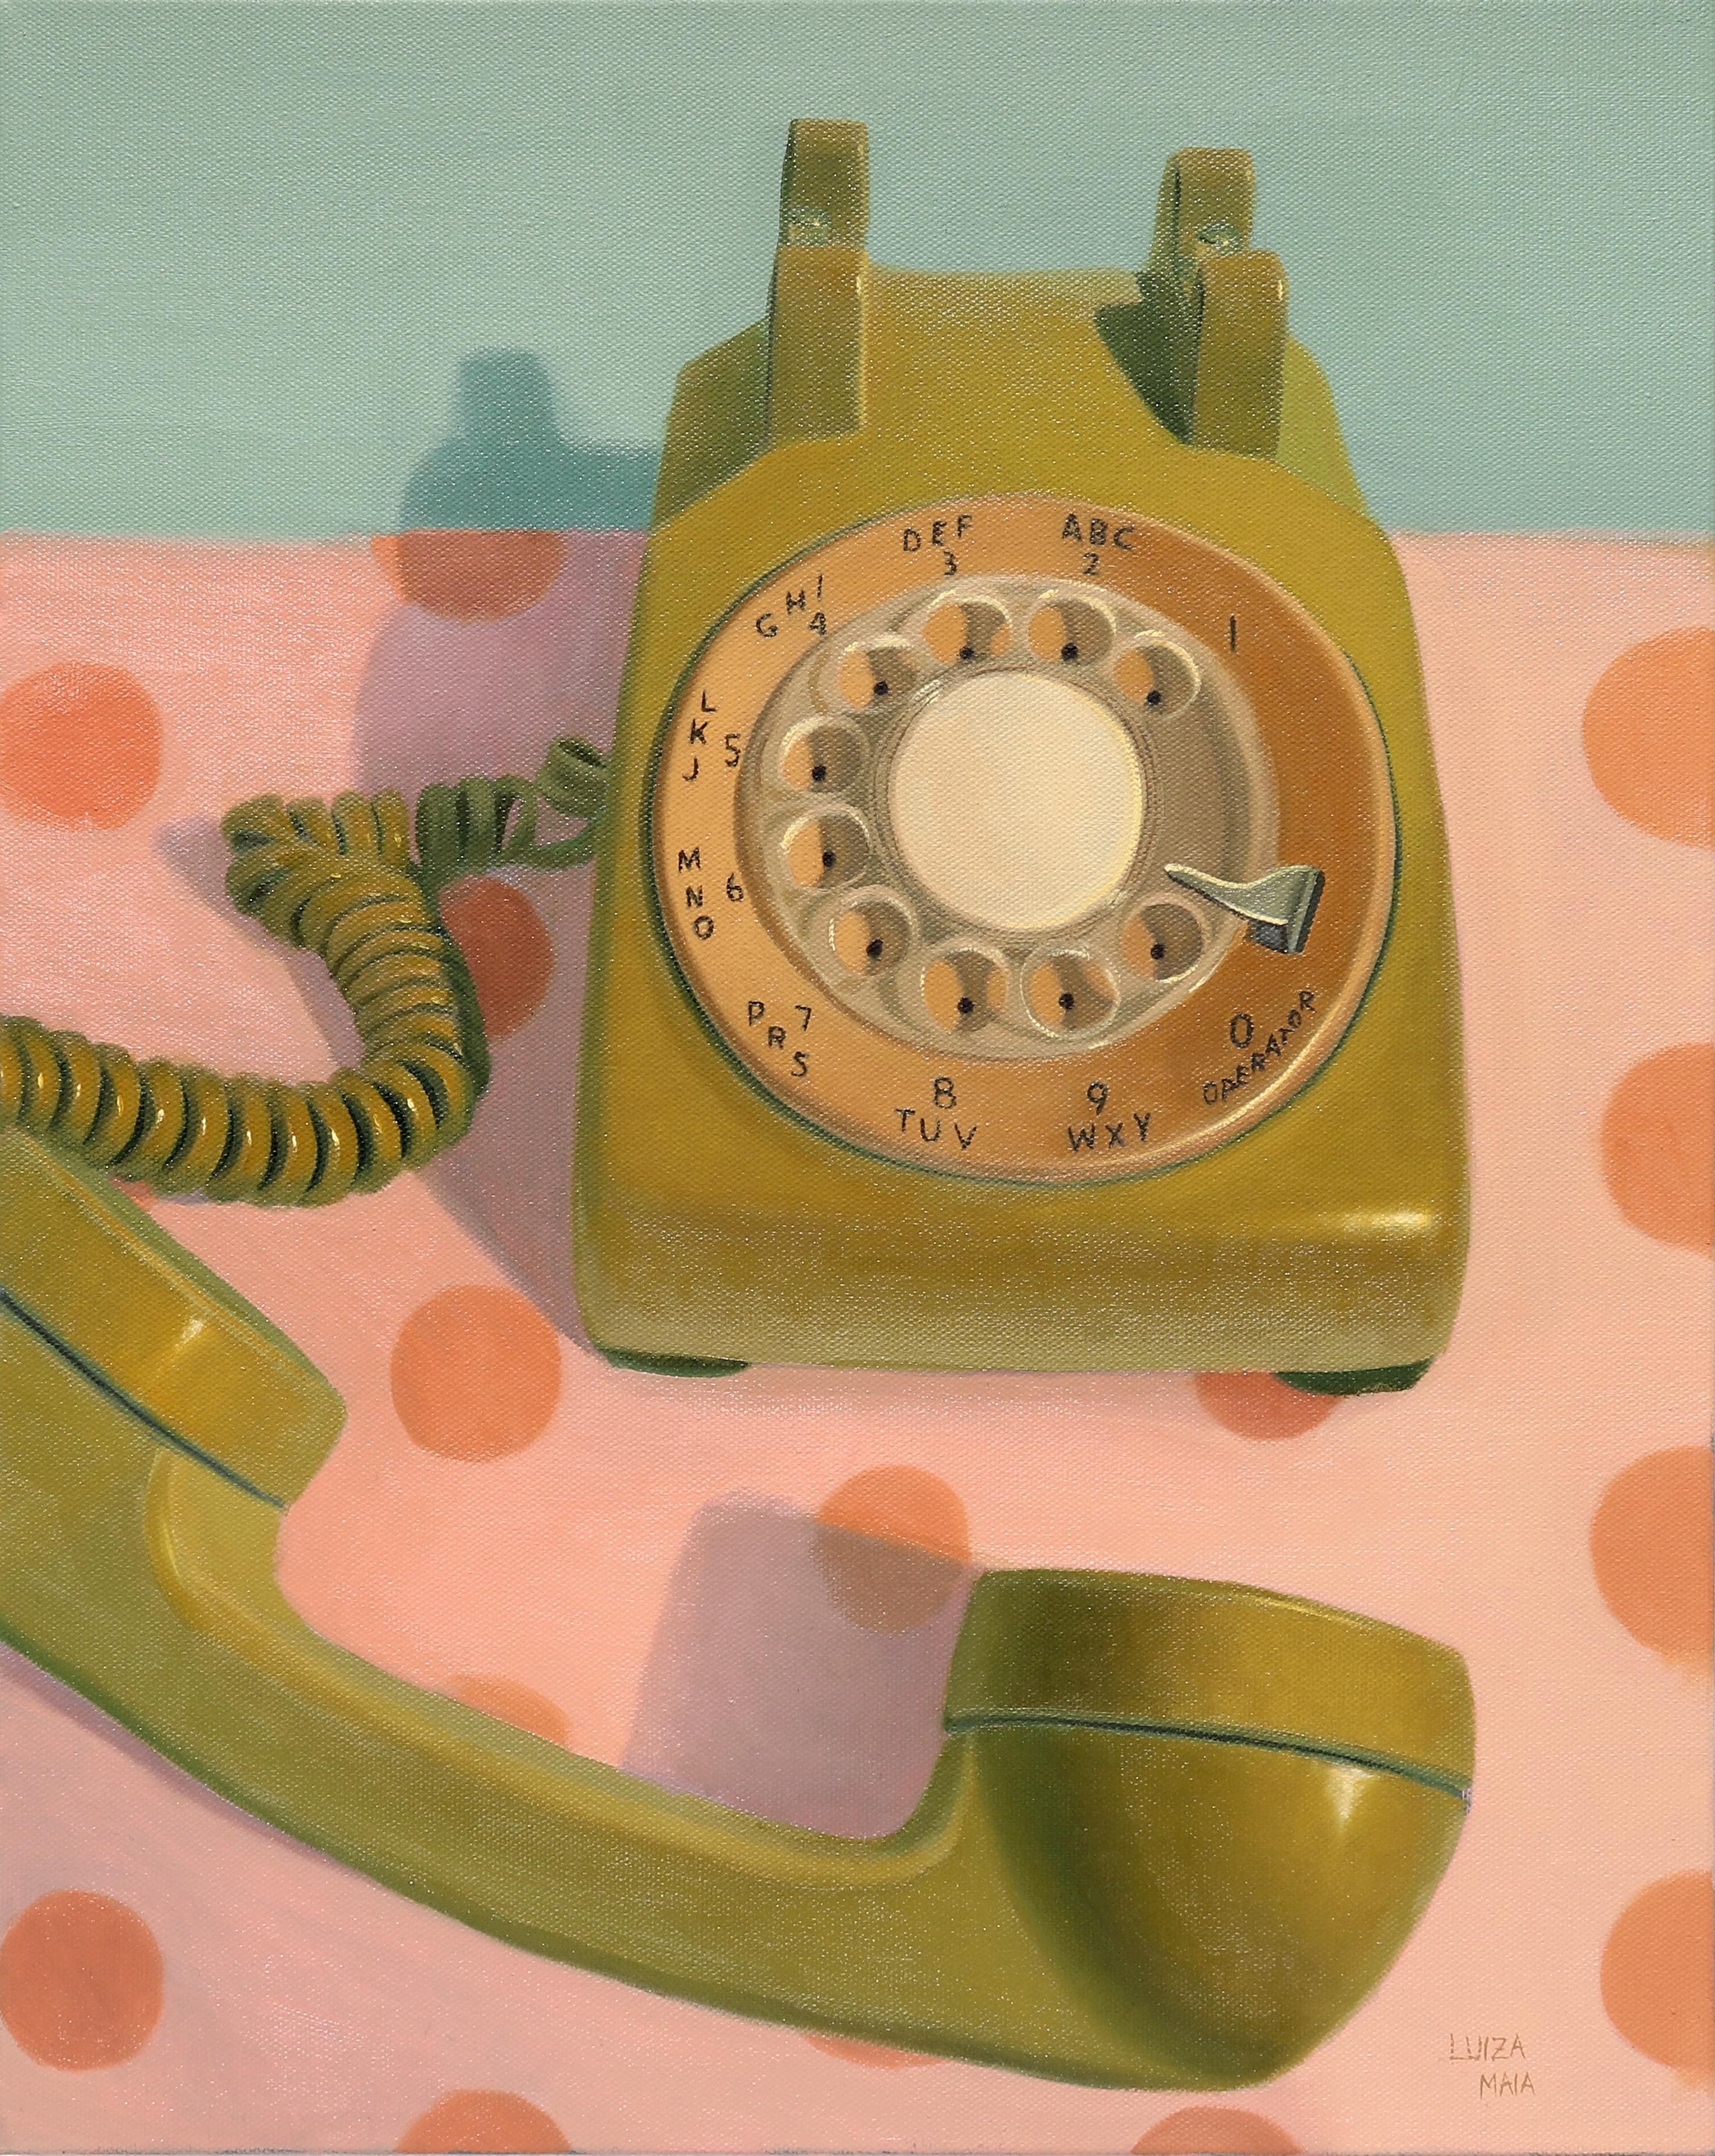 Grünes Telefon-originale Realismus Stillleben Retro-Ölgemälde-Zeitgenössische Kunst